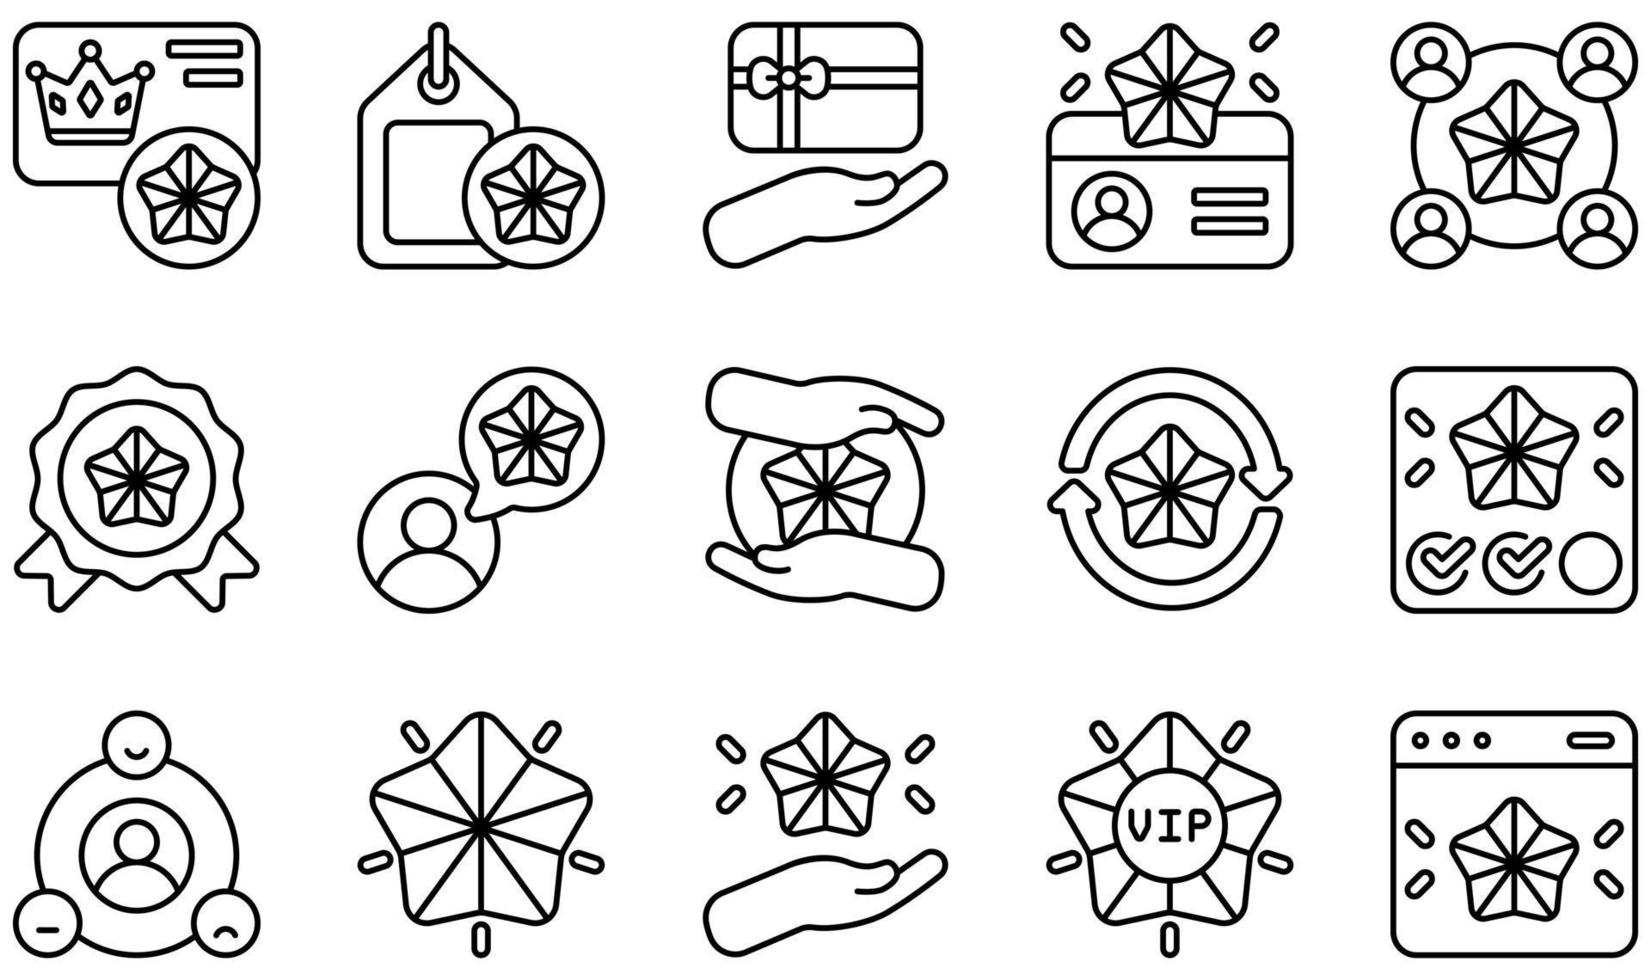 conjunto de iconos vectoriales relacionados con la lealtad del cliente. contiene íconos como tarjeta de lealtad, etiqueta de lealtad, miembro, tarjeta de miembro, membresía, relación y más. vector